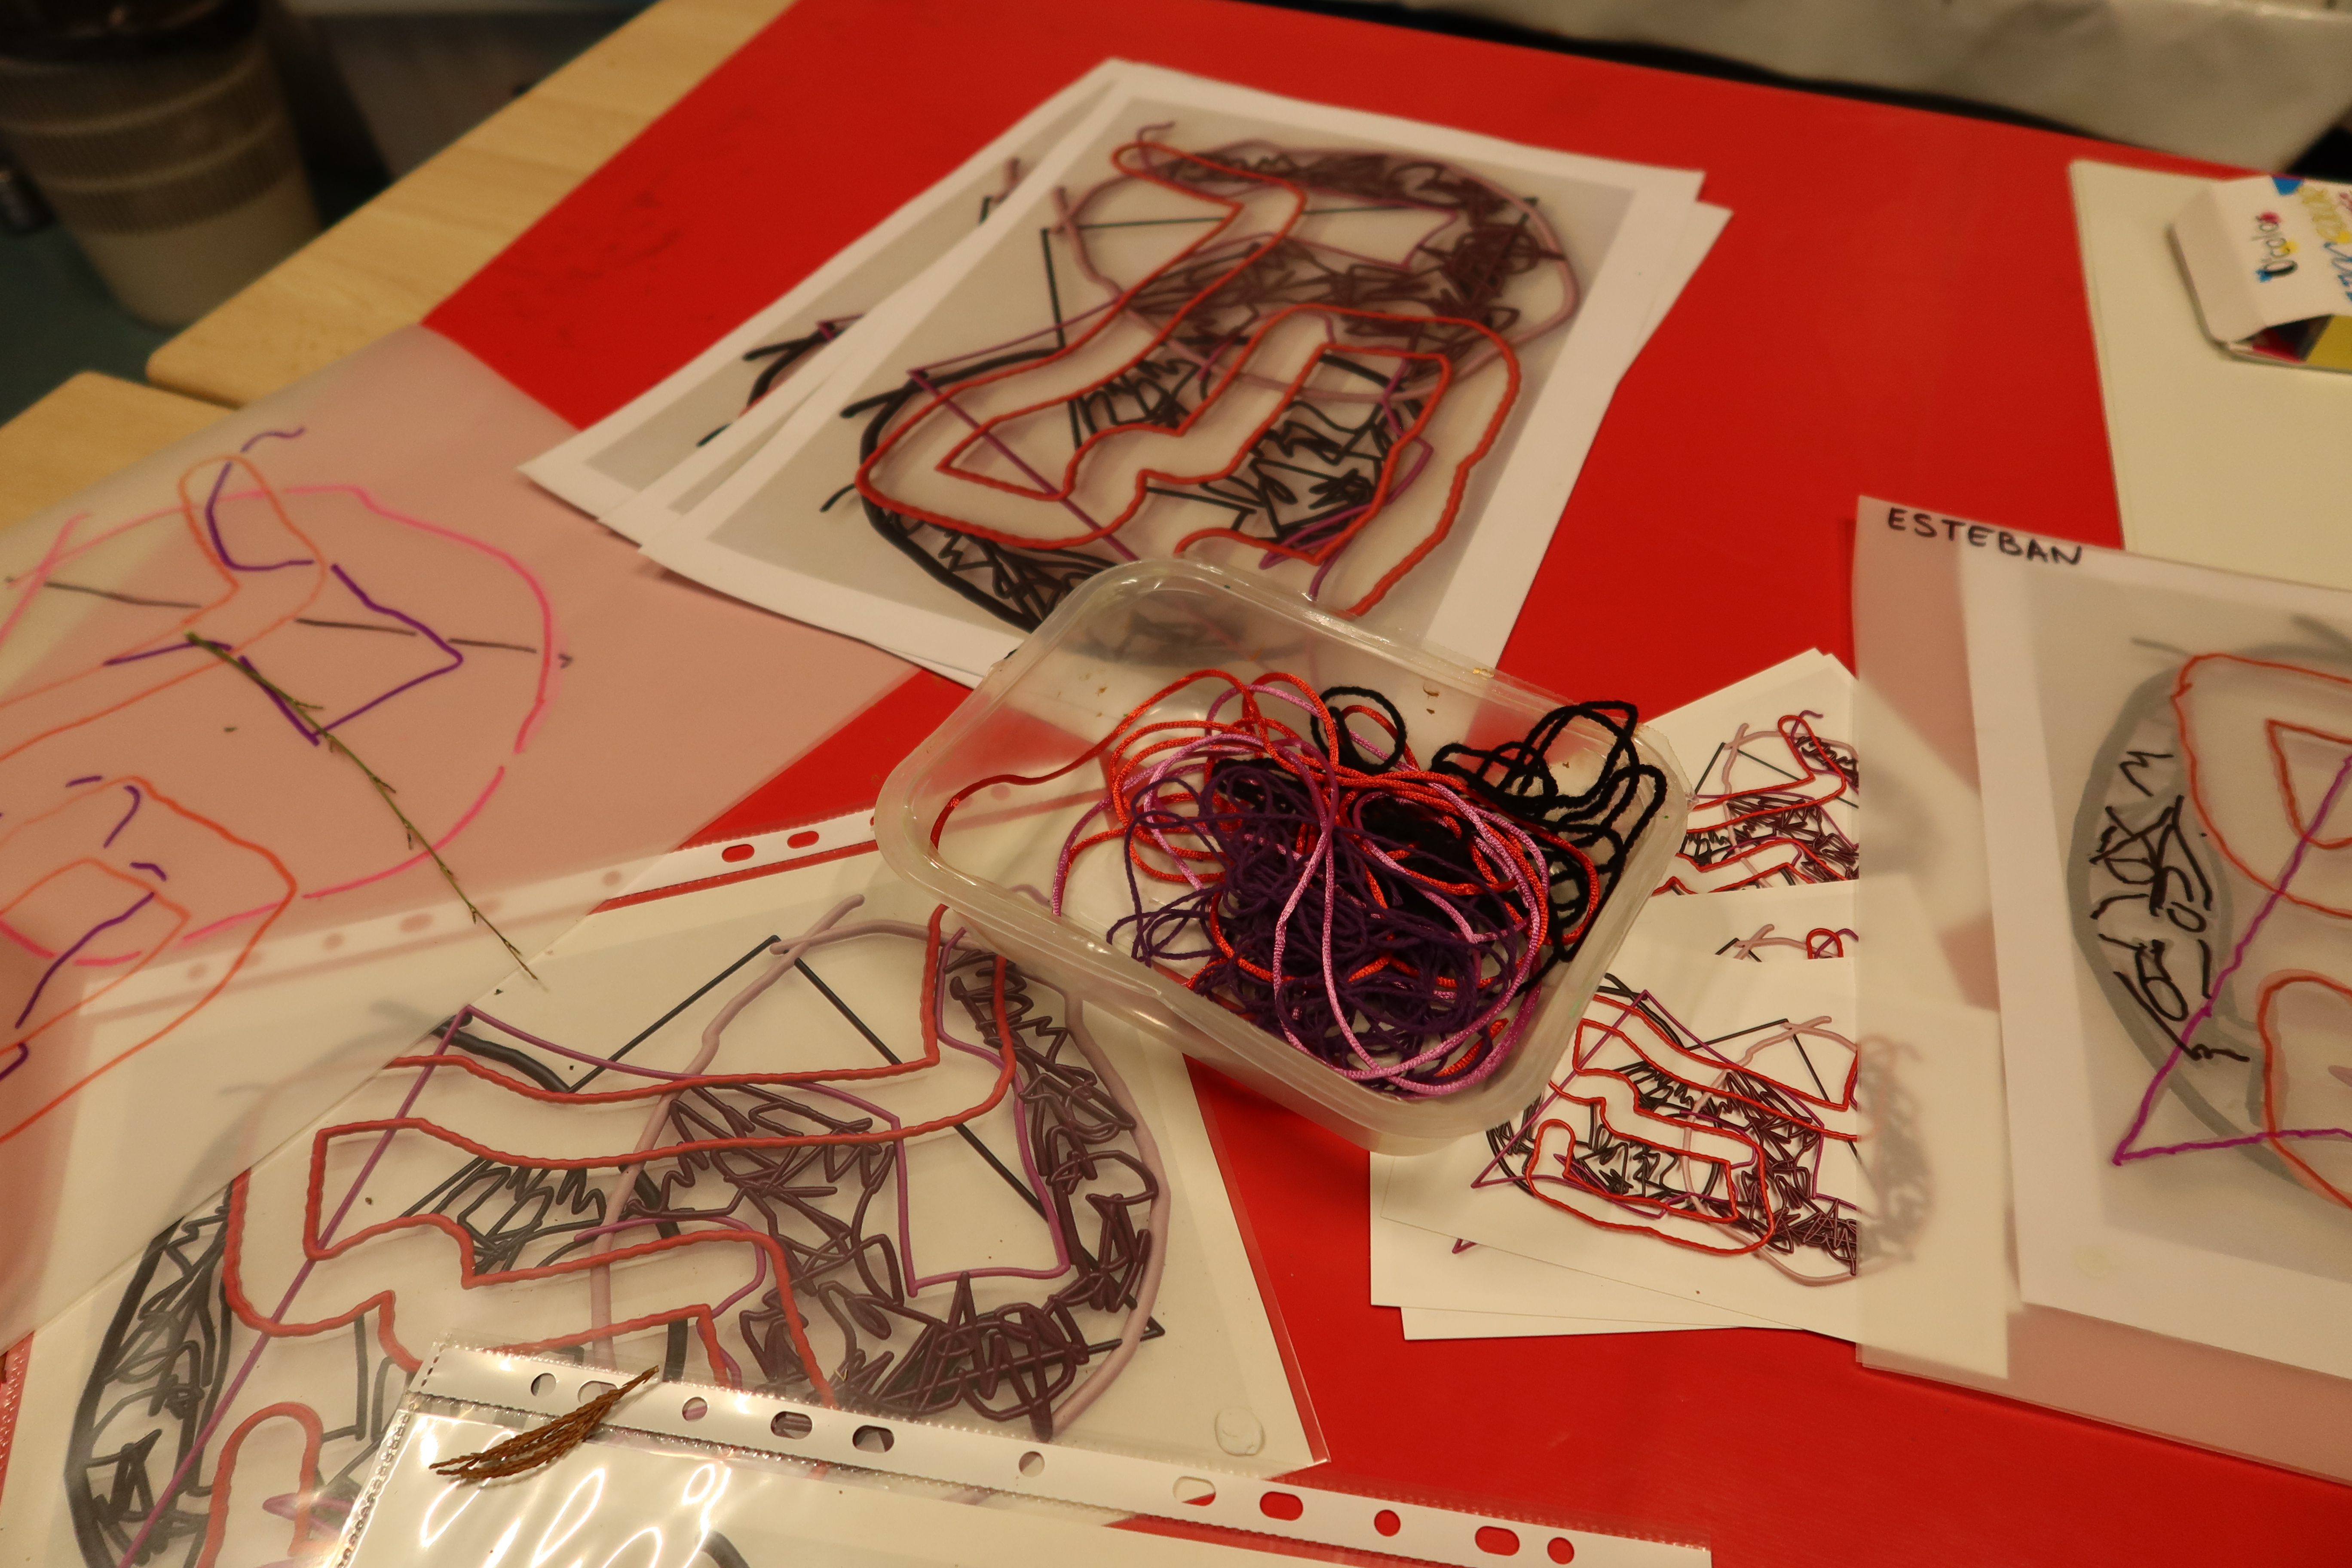 Des collages de fils de laine dans des pochettes transparentes reposent sur une table. A côté d'eux sont posées des photocopies de l'oeuvre, Duroc, de Mia Marfurt.